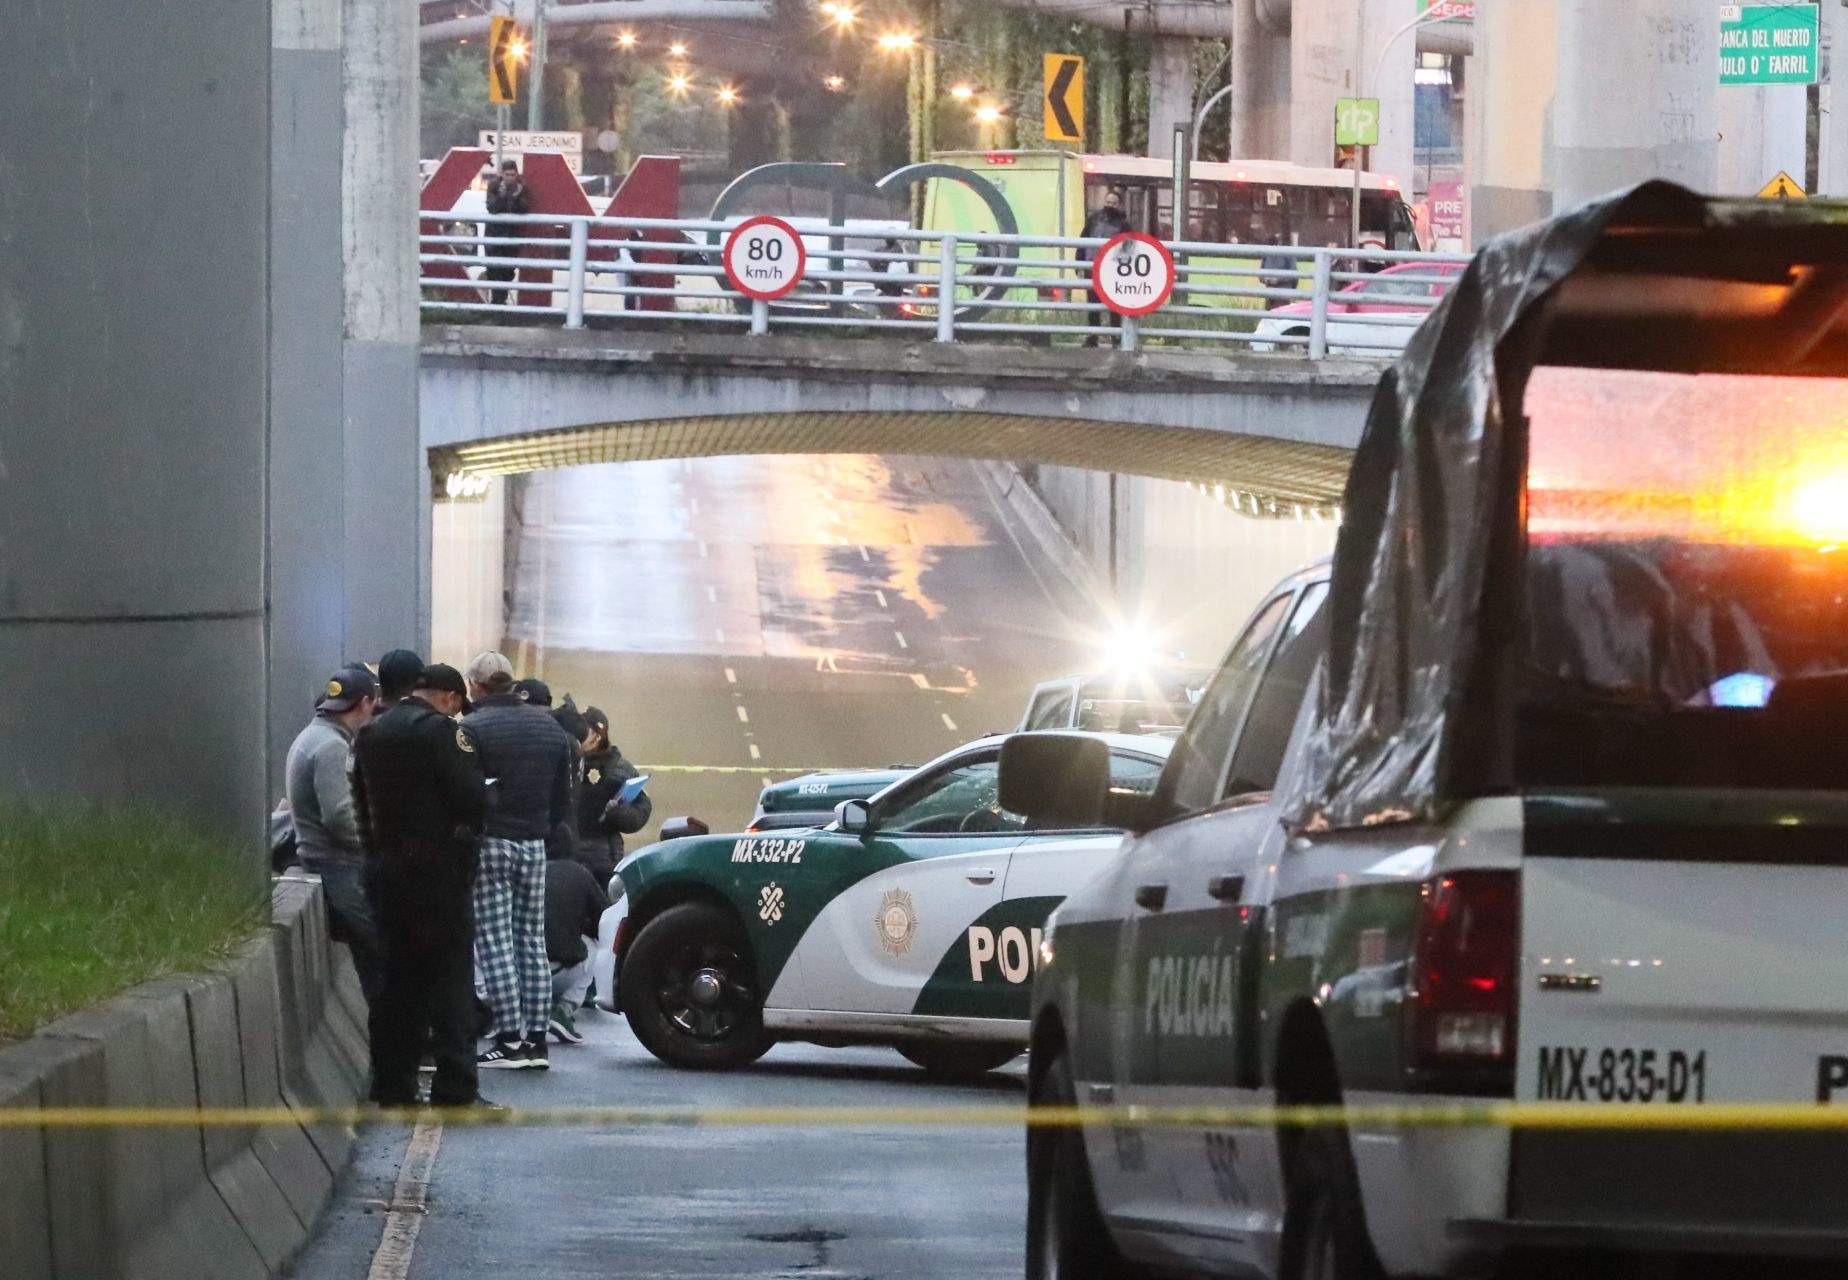 Policías de la CDMX fueron felicitados por evitar que el hombre se lanzara del puente (FOTO: ROGELIO MORALES/CUARTOSCURO.COM)